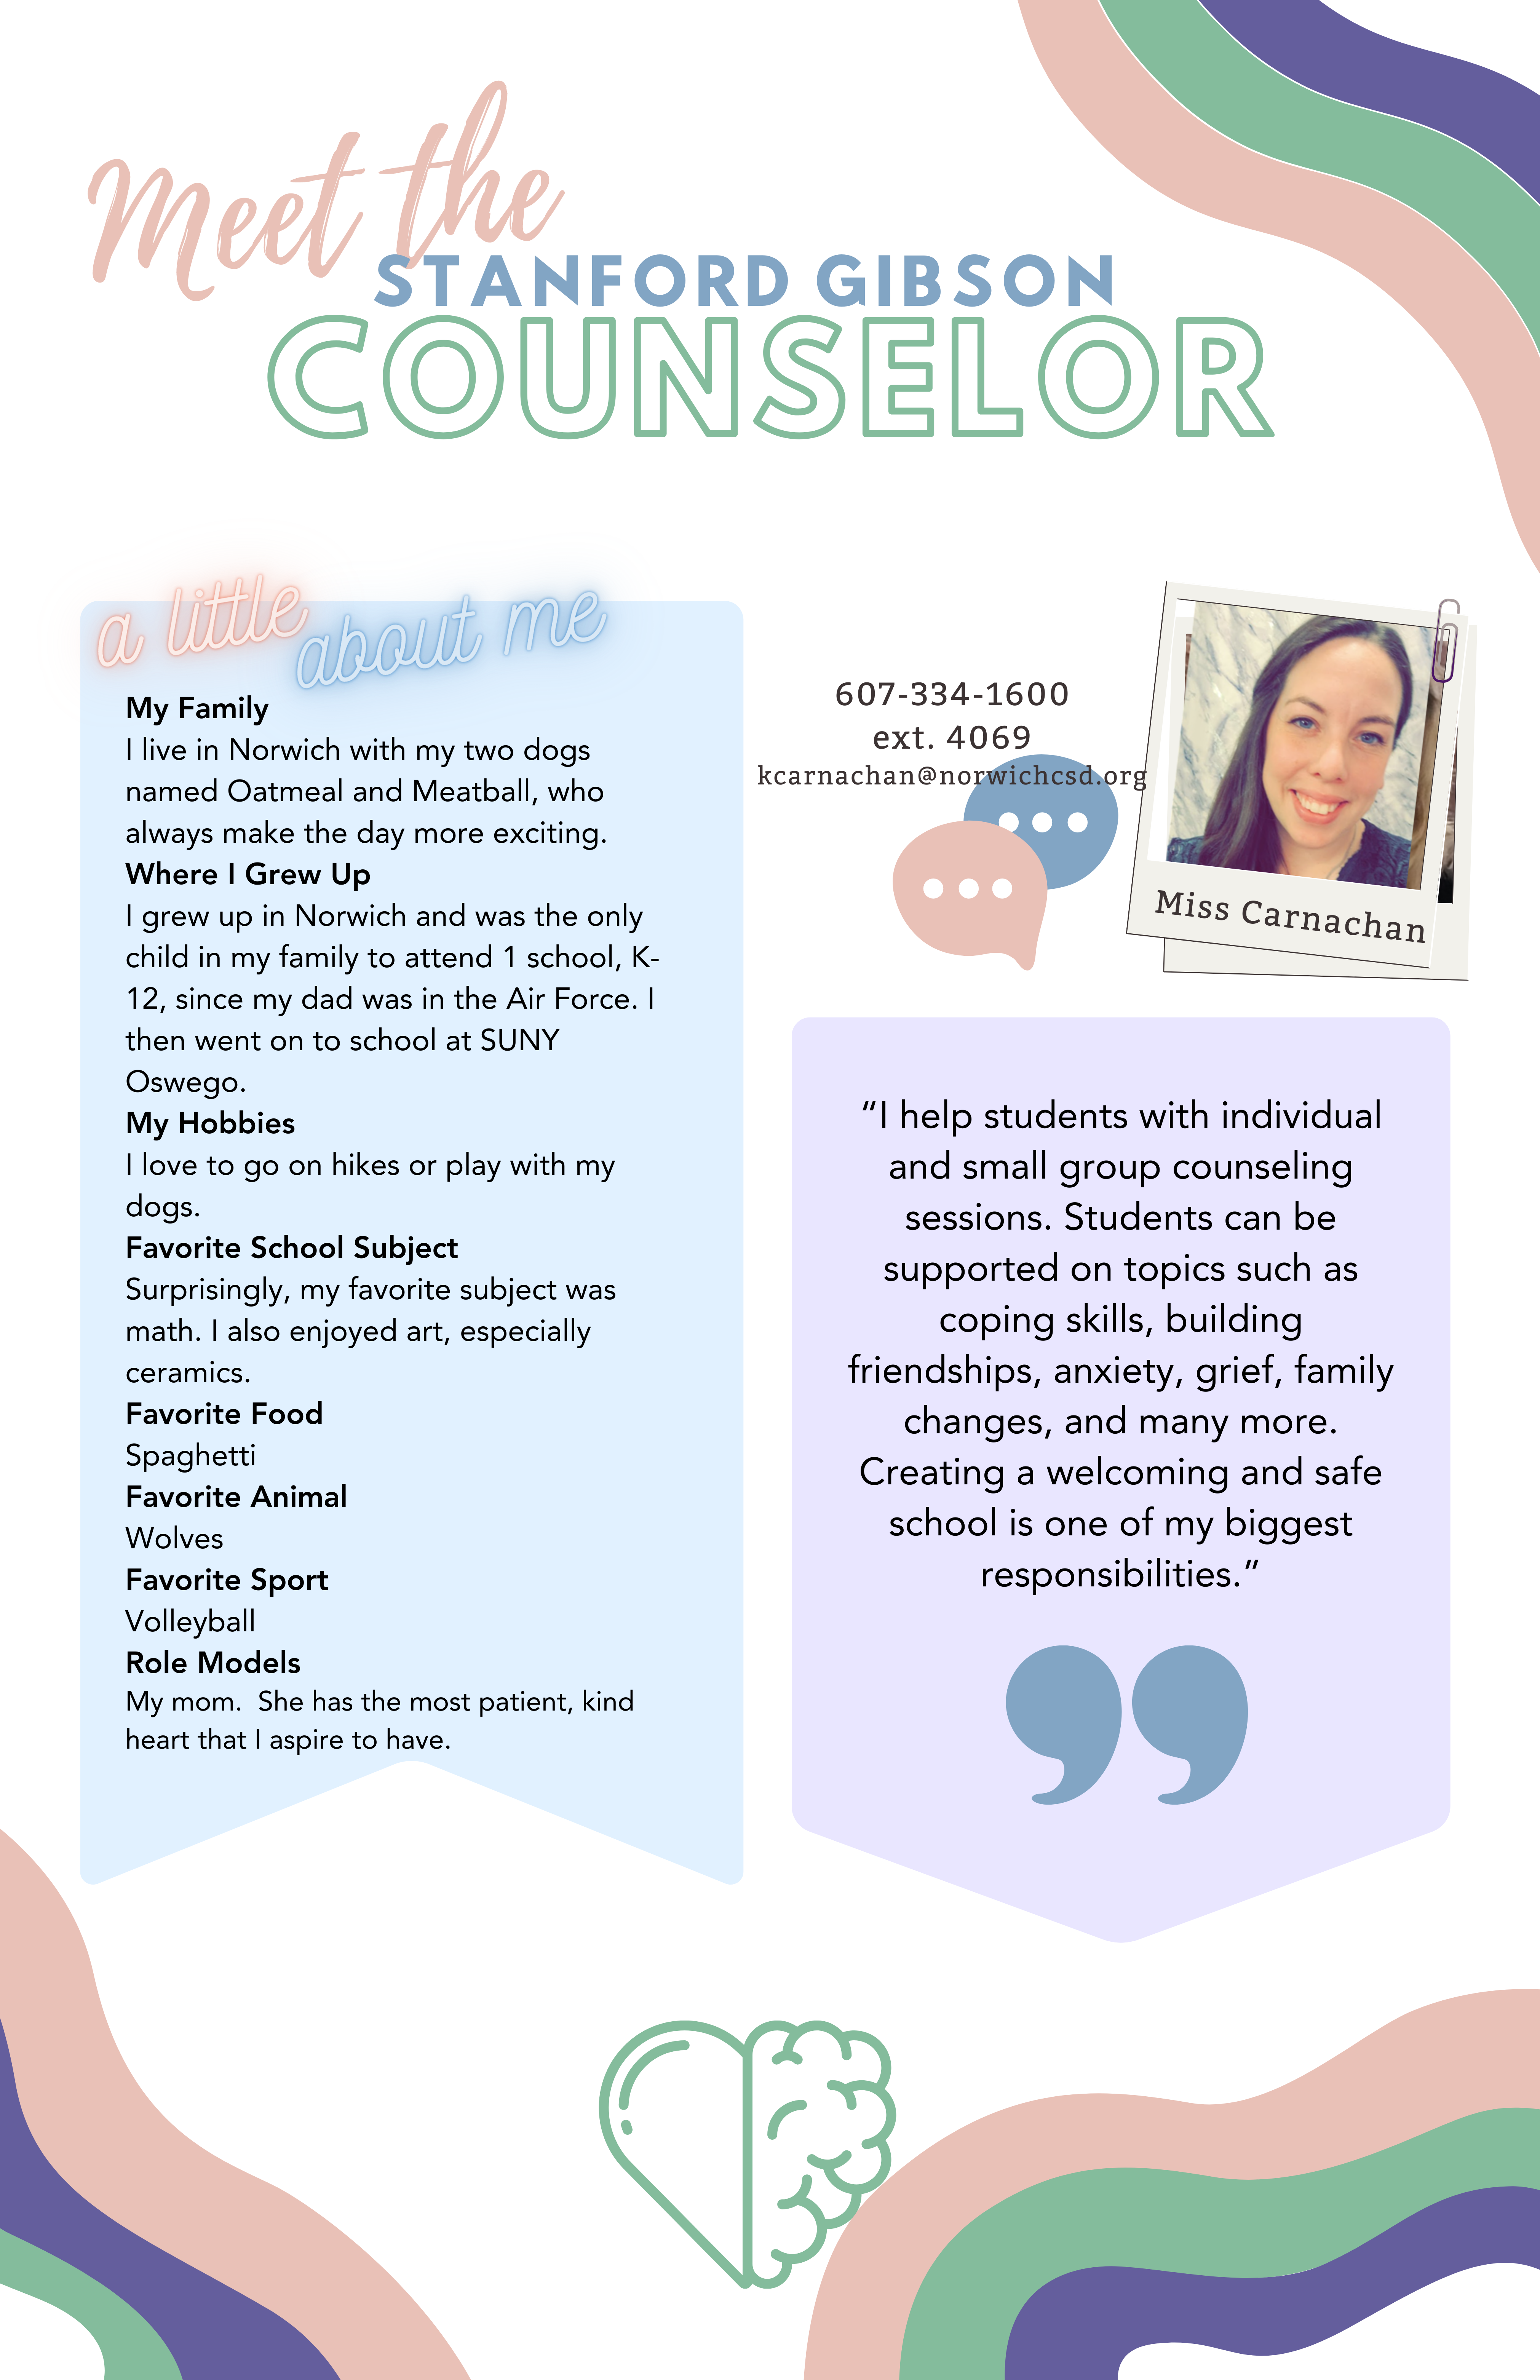 Meet the School Counselor - Ms. Carnachan